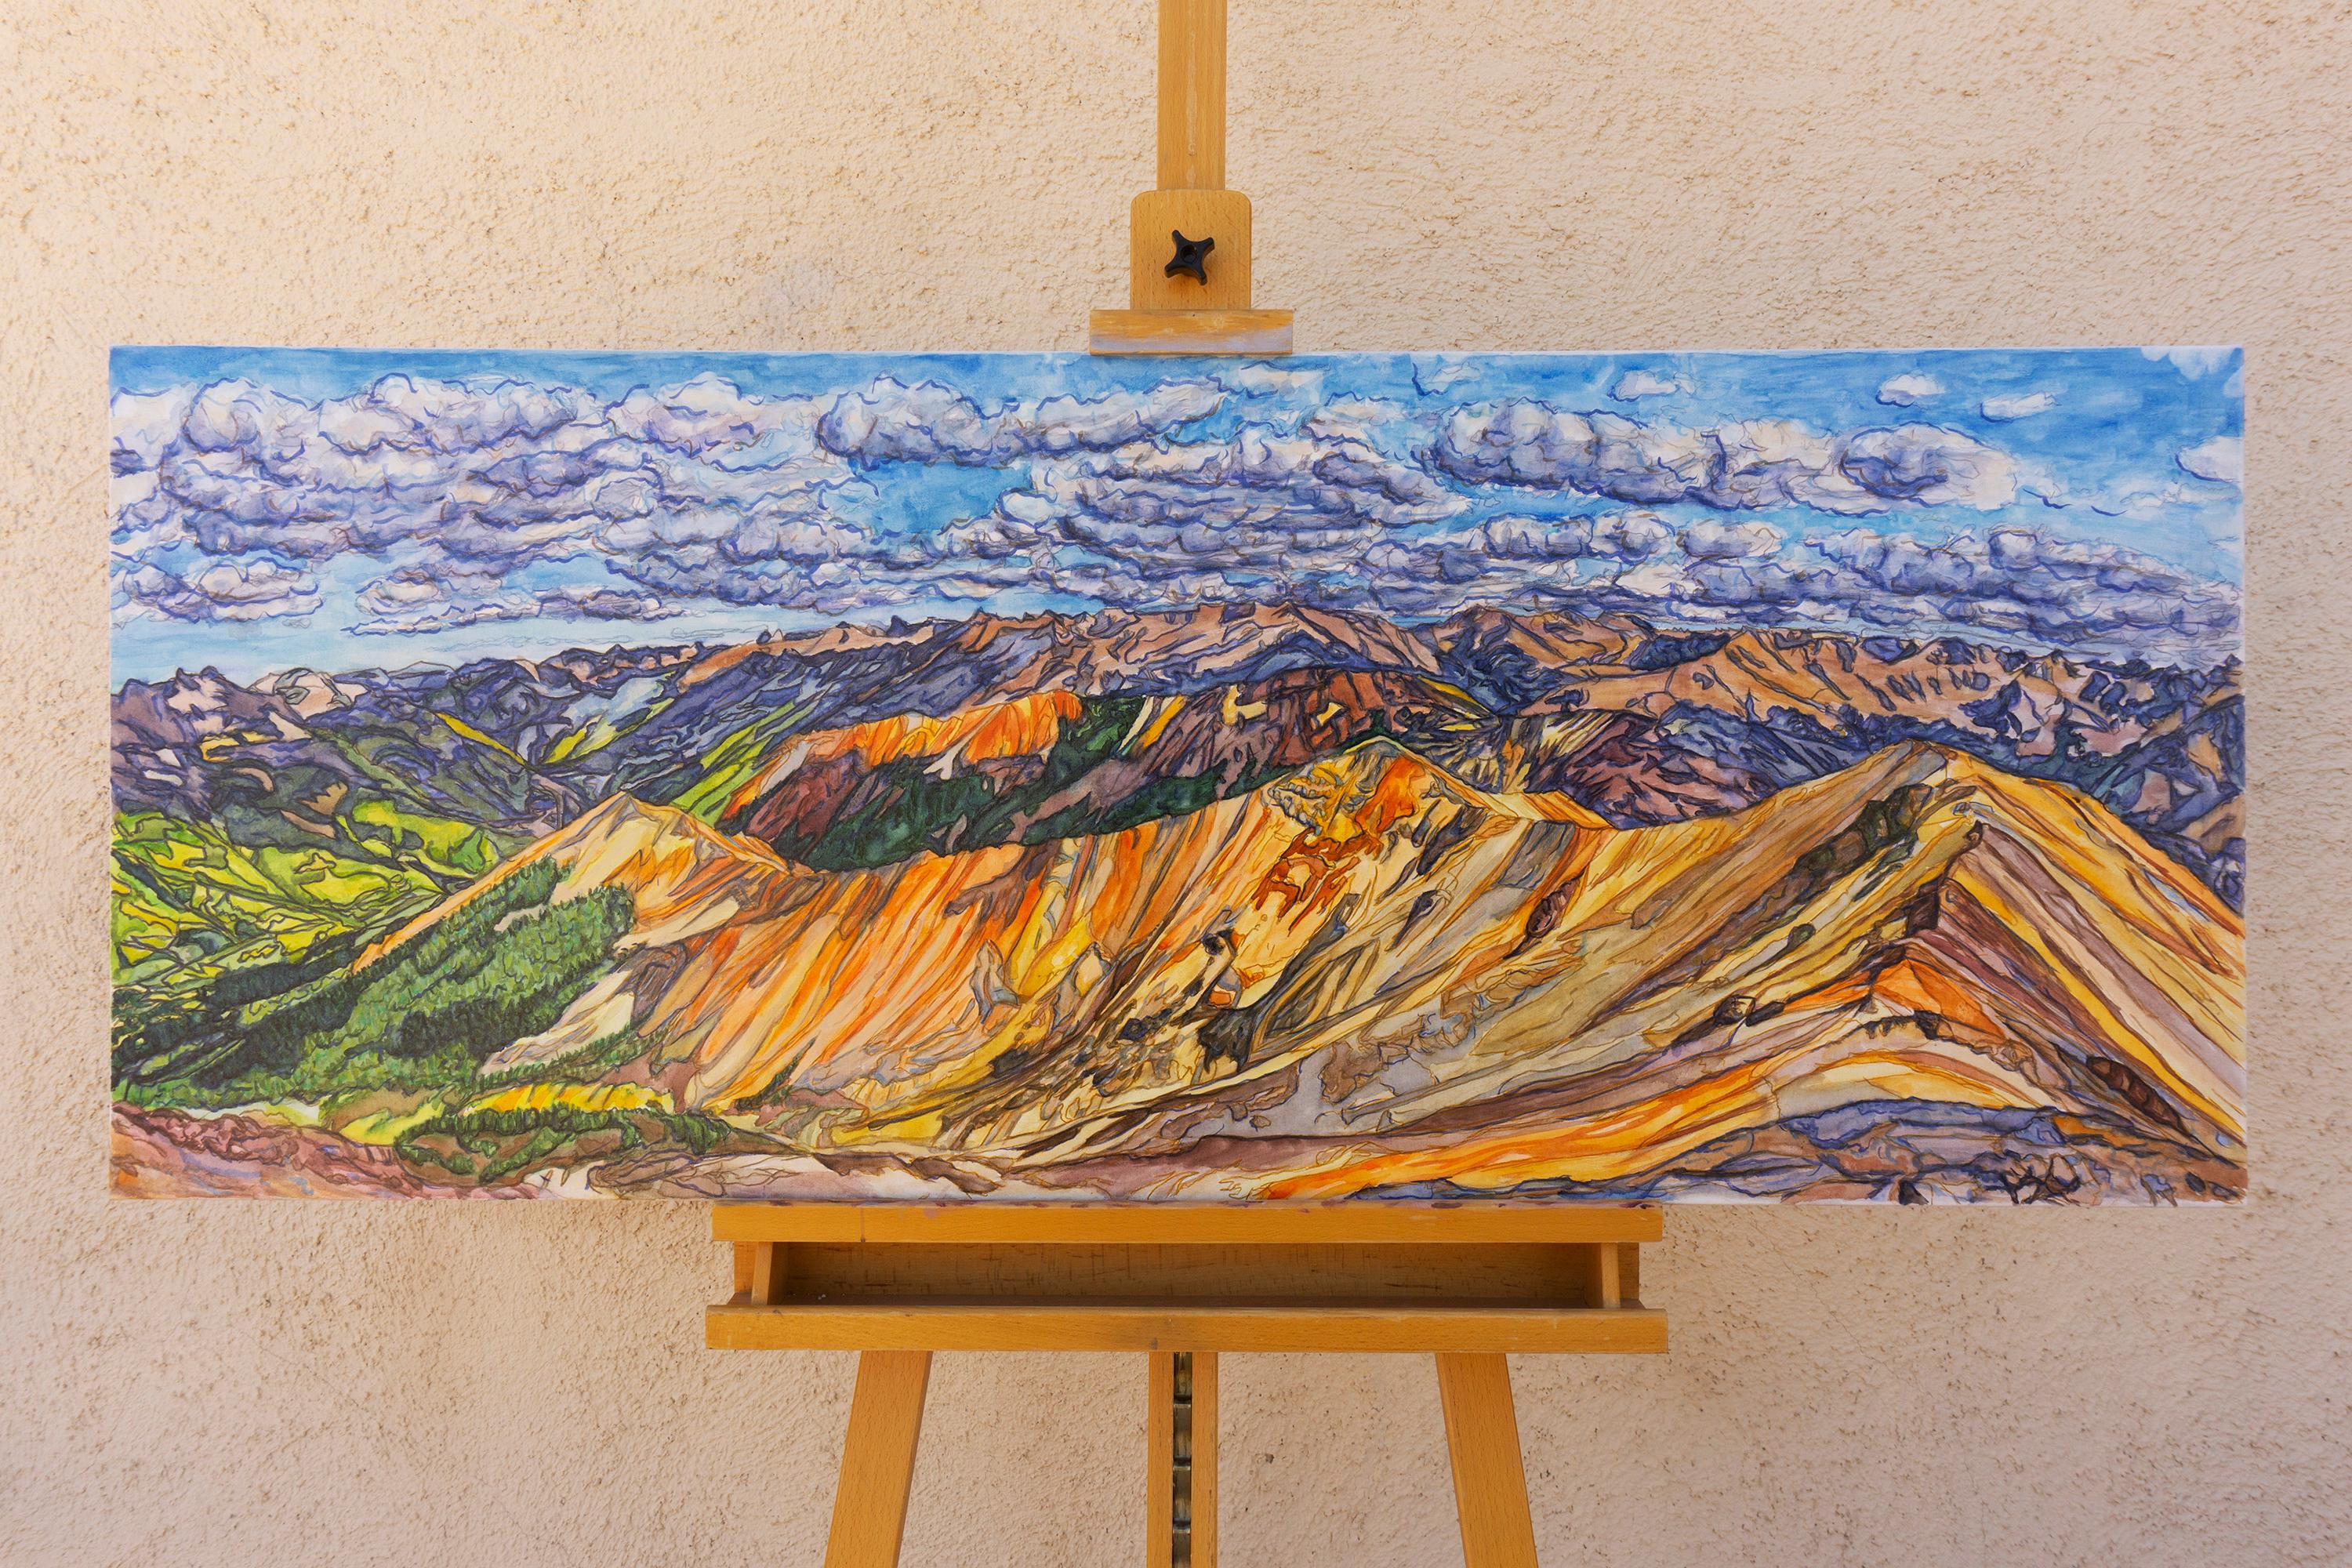 <p>Commentaires de l'artiste<br>Un panorama aux couleurs vives des montagnes San Juan dans le Colorado se déploie en couches chaudes, avec en contraste les nuages qui projettent des ombres bleues et froides. Les verts des arbres complètent la